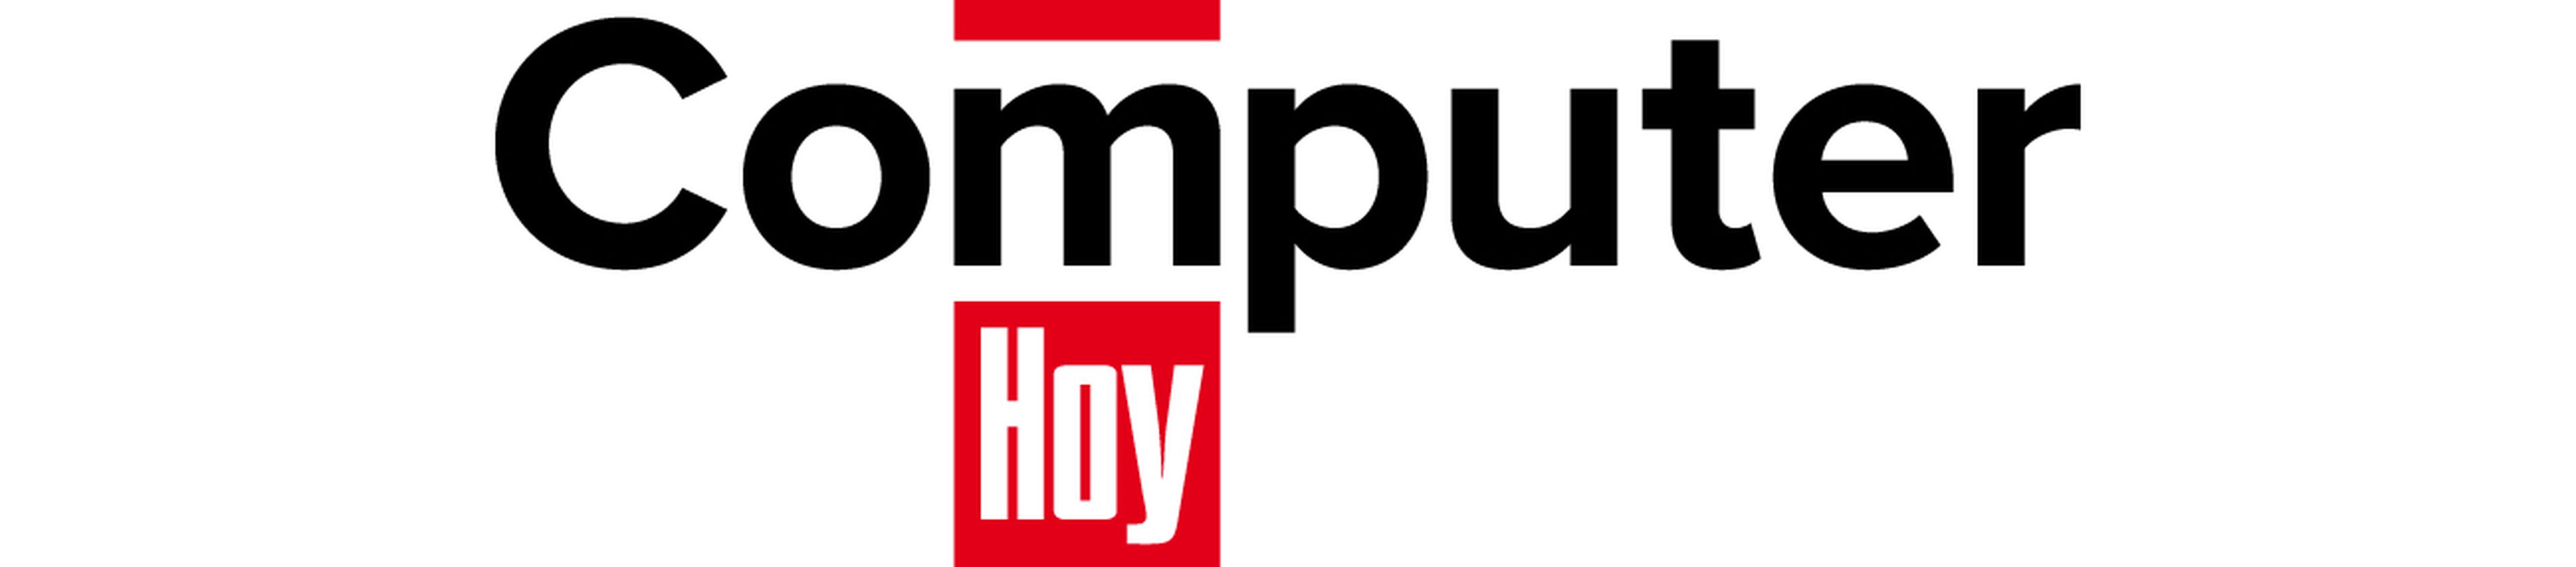 Nuevo logo computerhoy.com